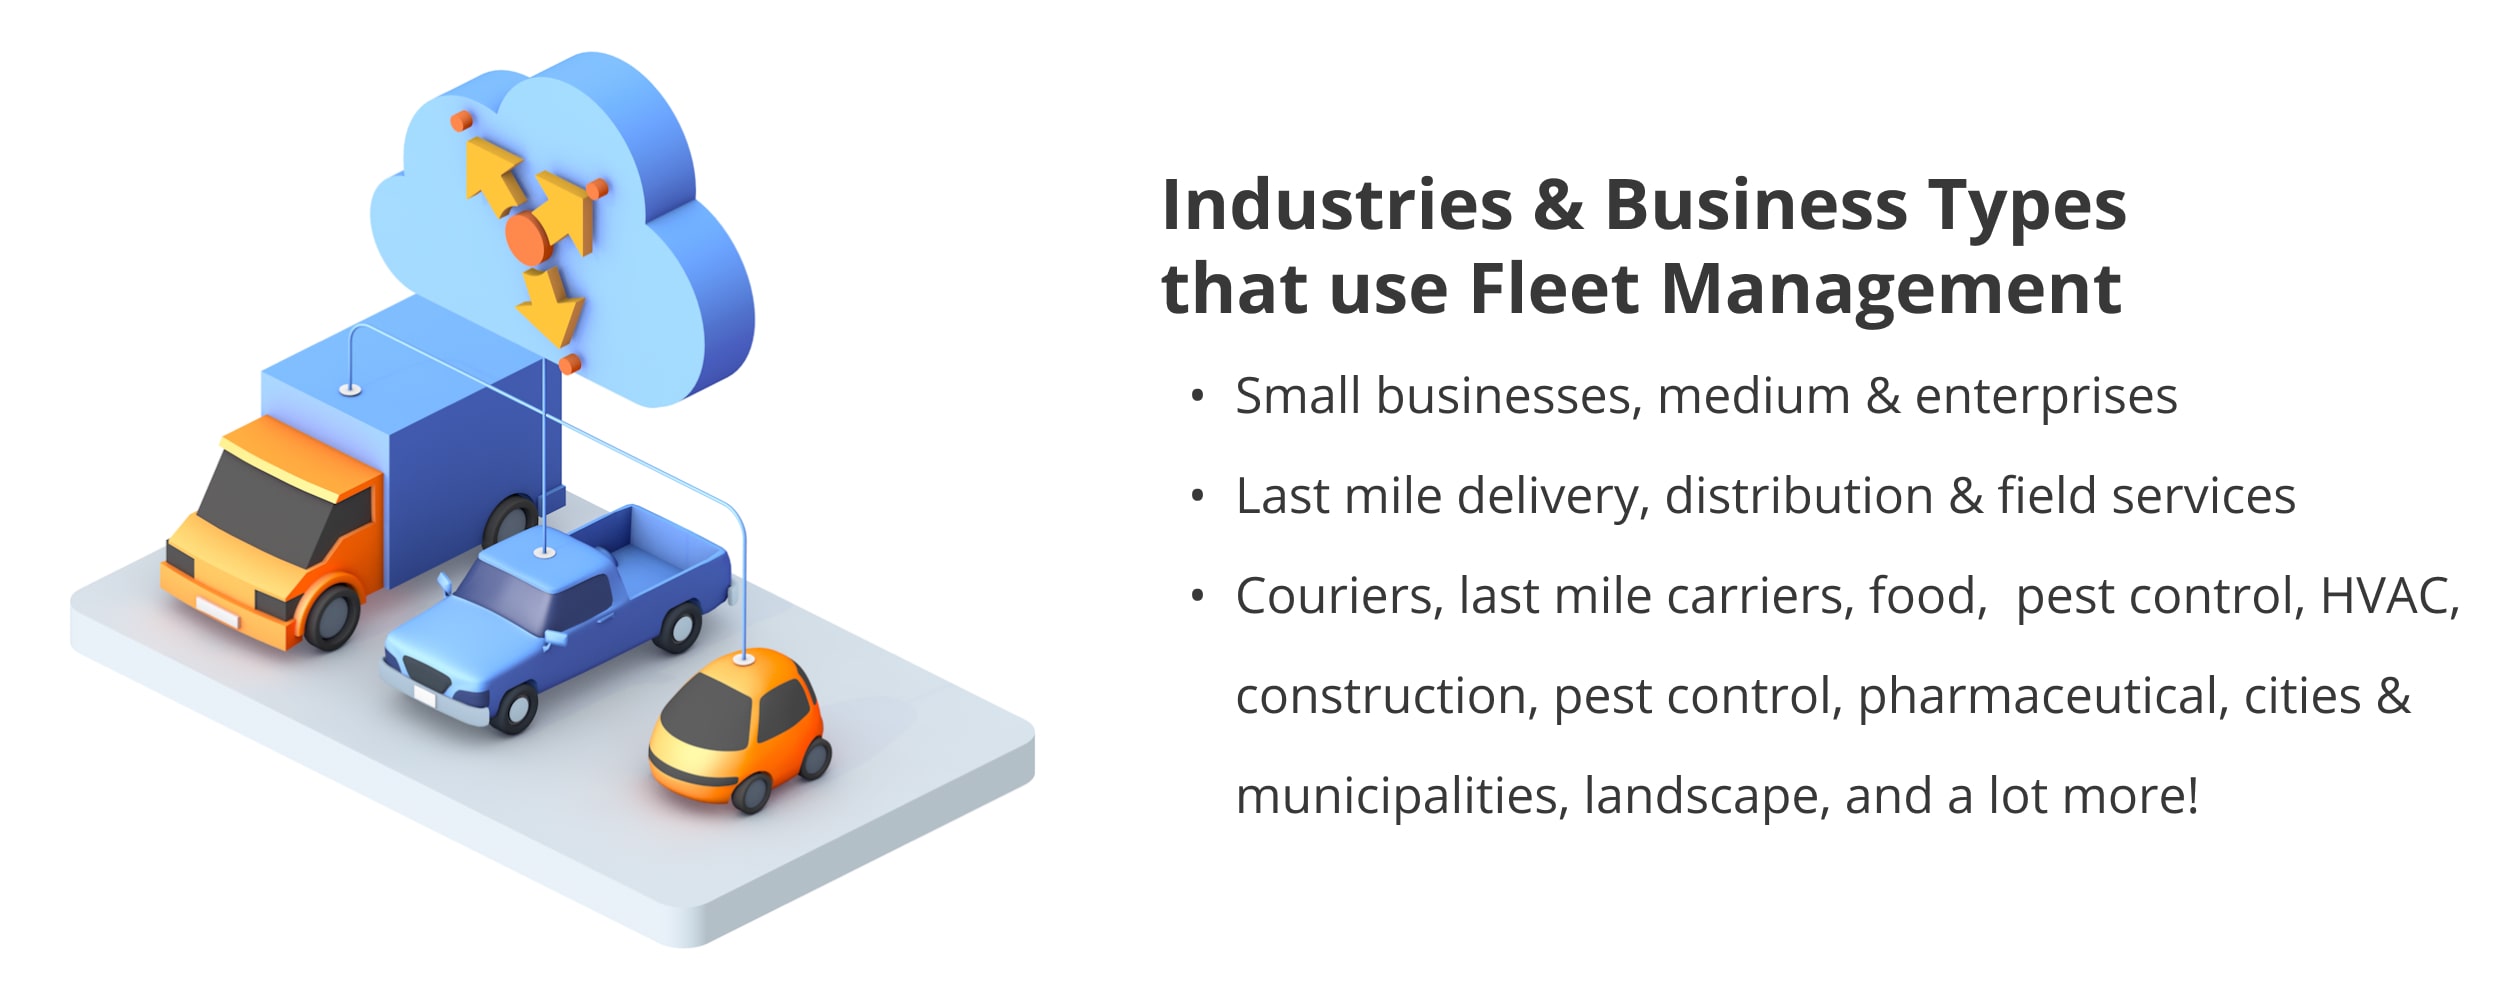 Logistics intense industries that use fleet management software.